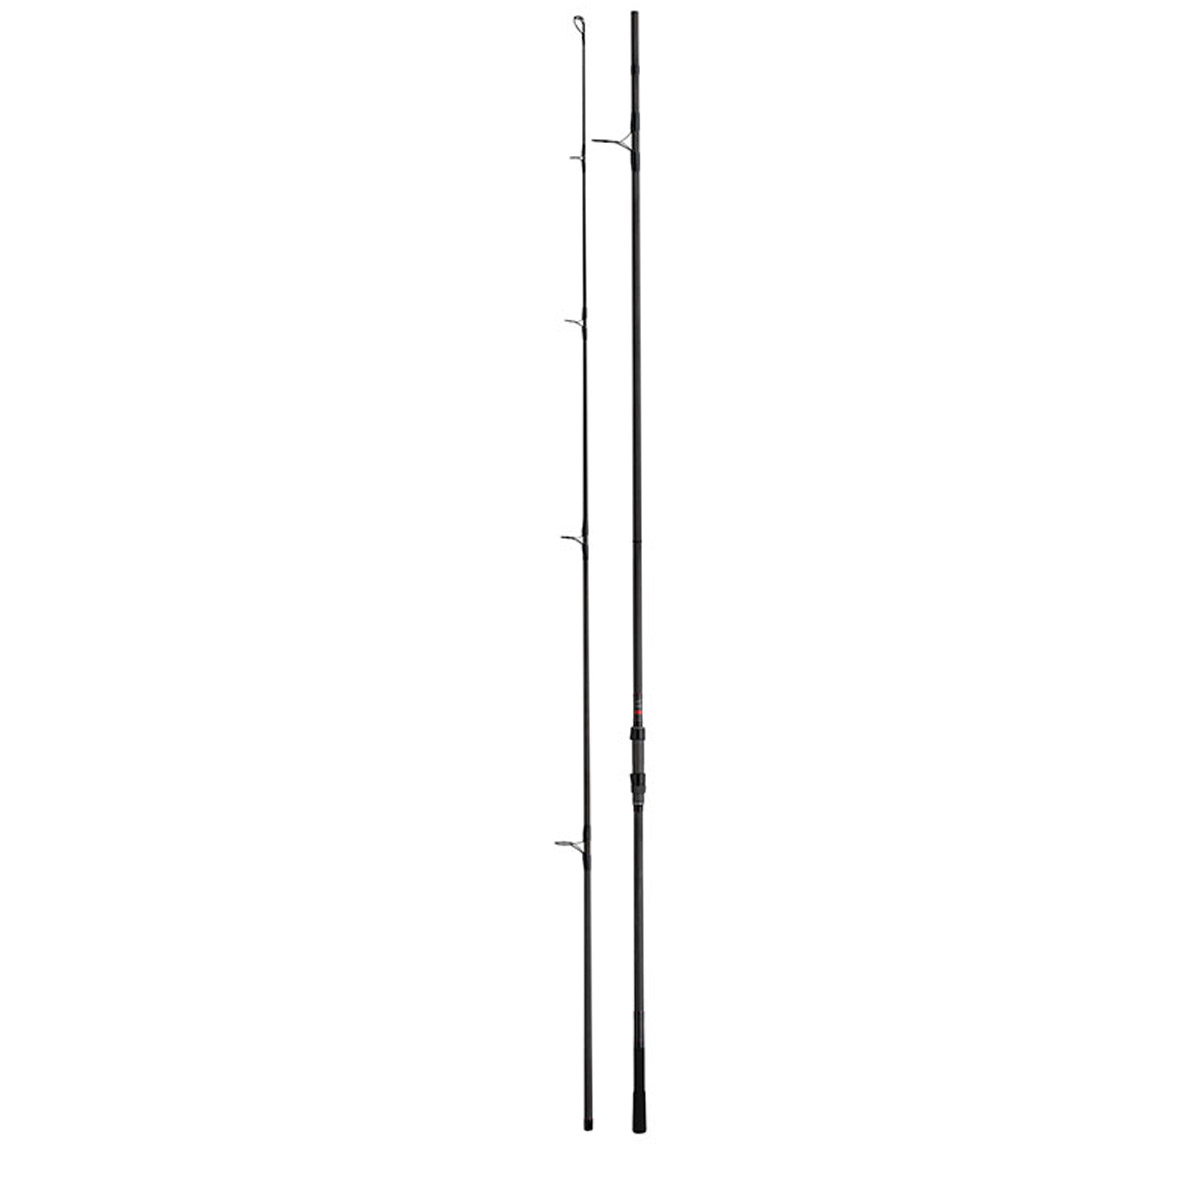 Spomb Rods -  12 ft Medium Range  -  12 ft Long Range  -  13 ft Long Range 